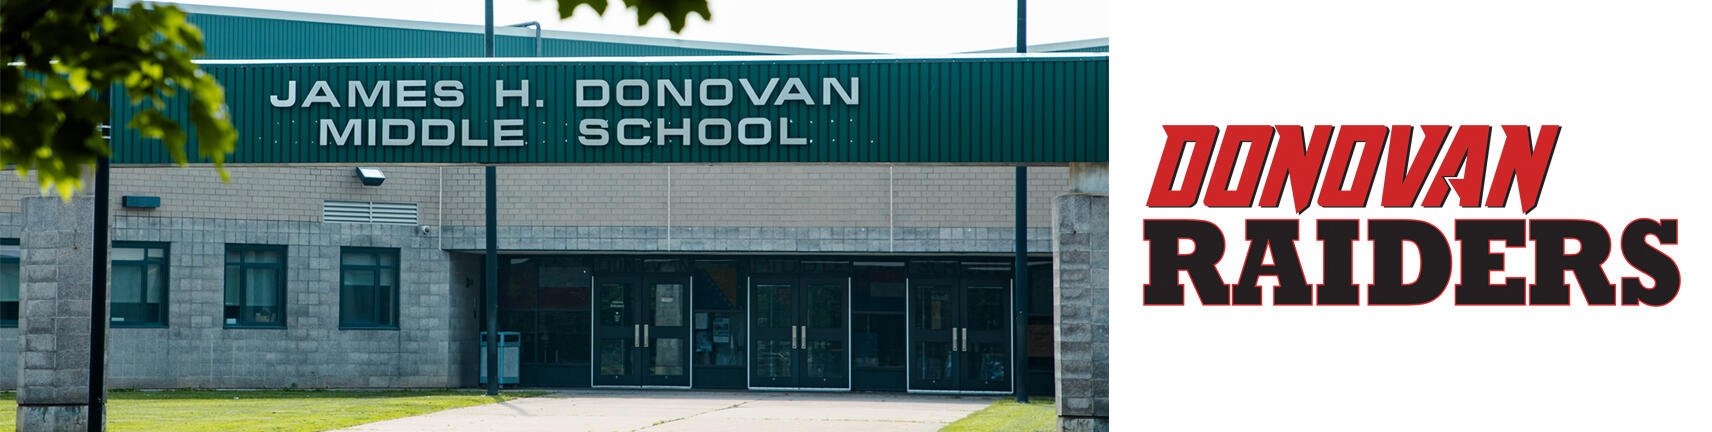 صورة لمبنى مدرسة دونوفان وشعار دونوفان رايدرز